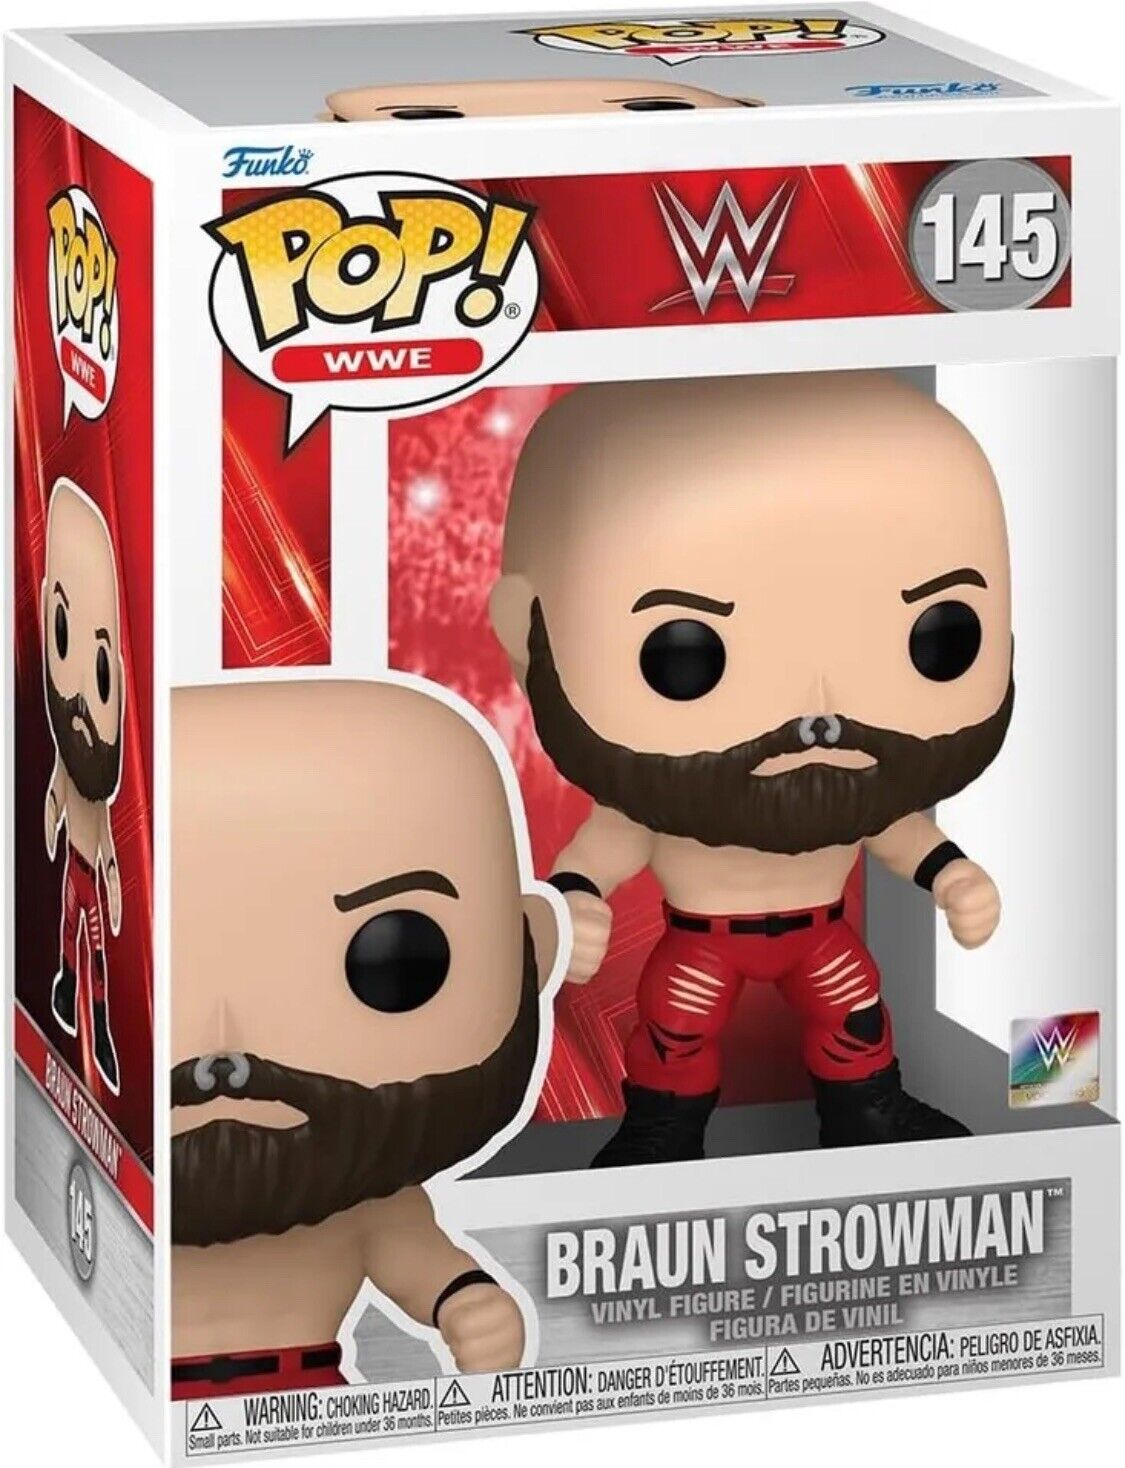 Braun Strowman 145 WWE Funko Pop Vinyl Figure